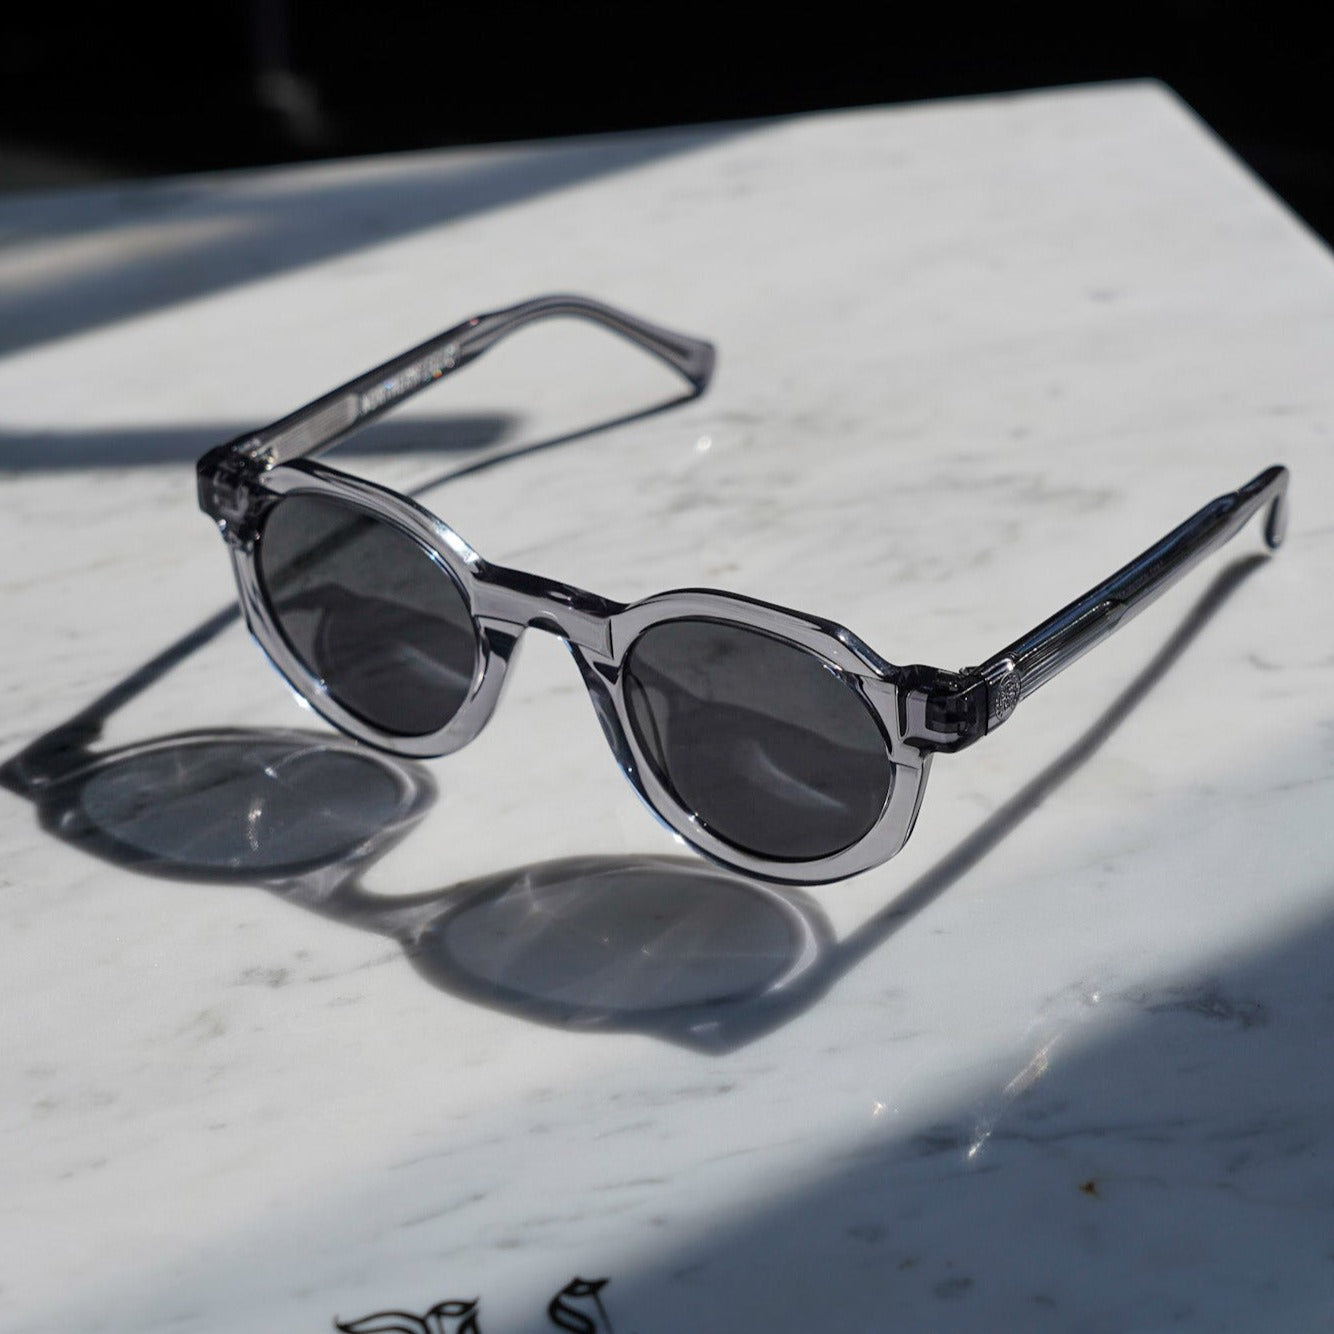 Signature sunglasses - Transparent grey